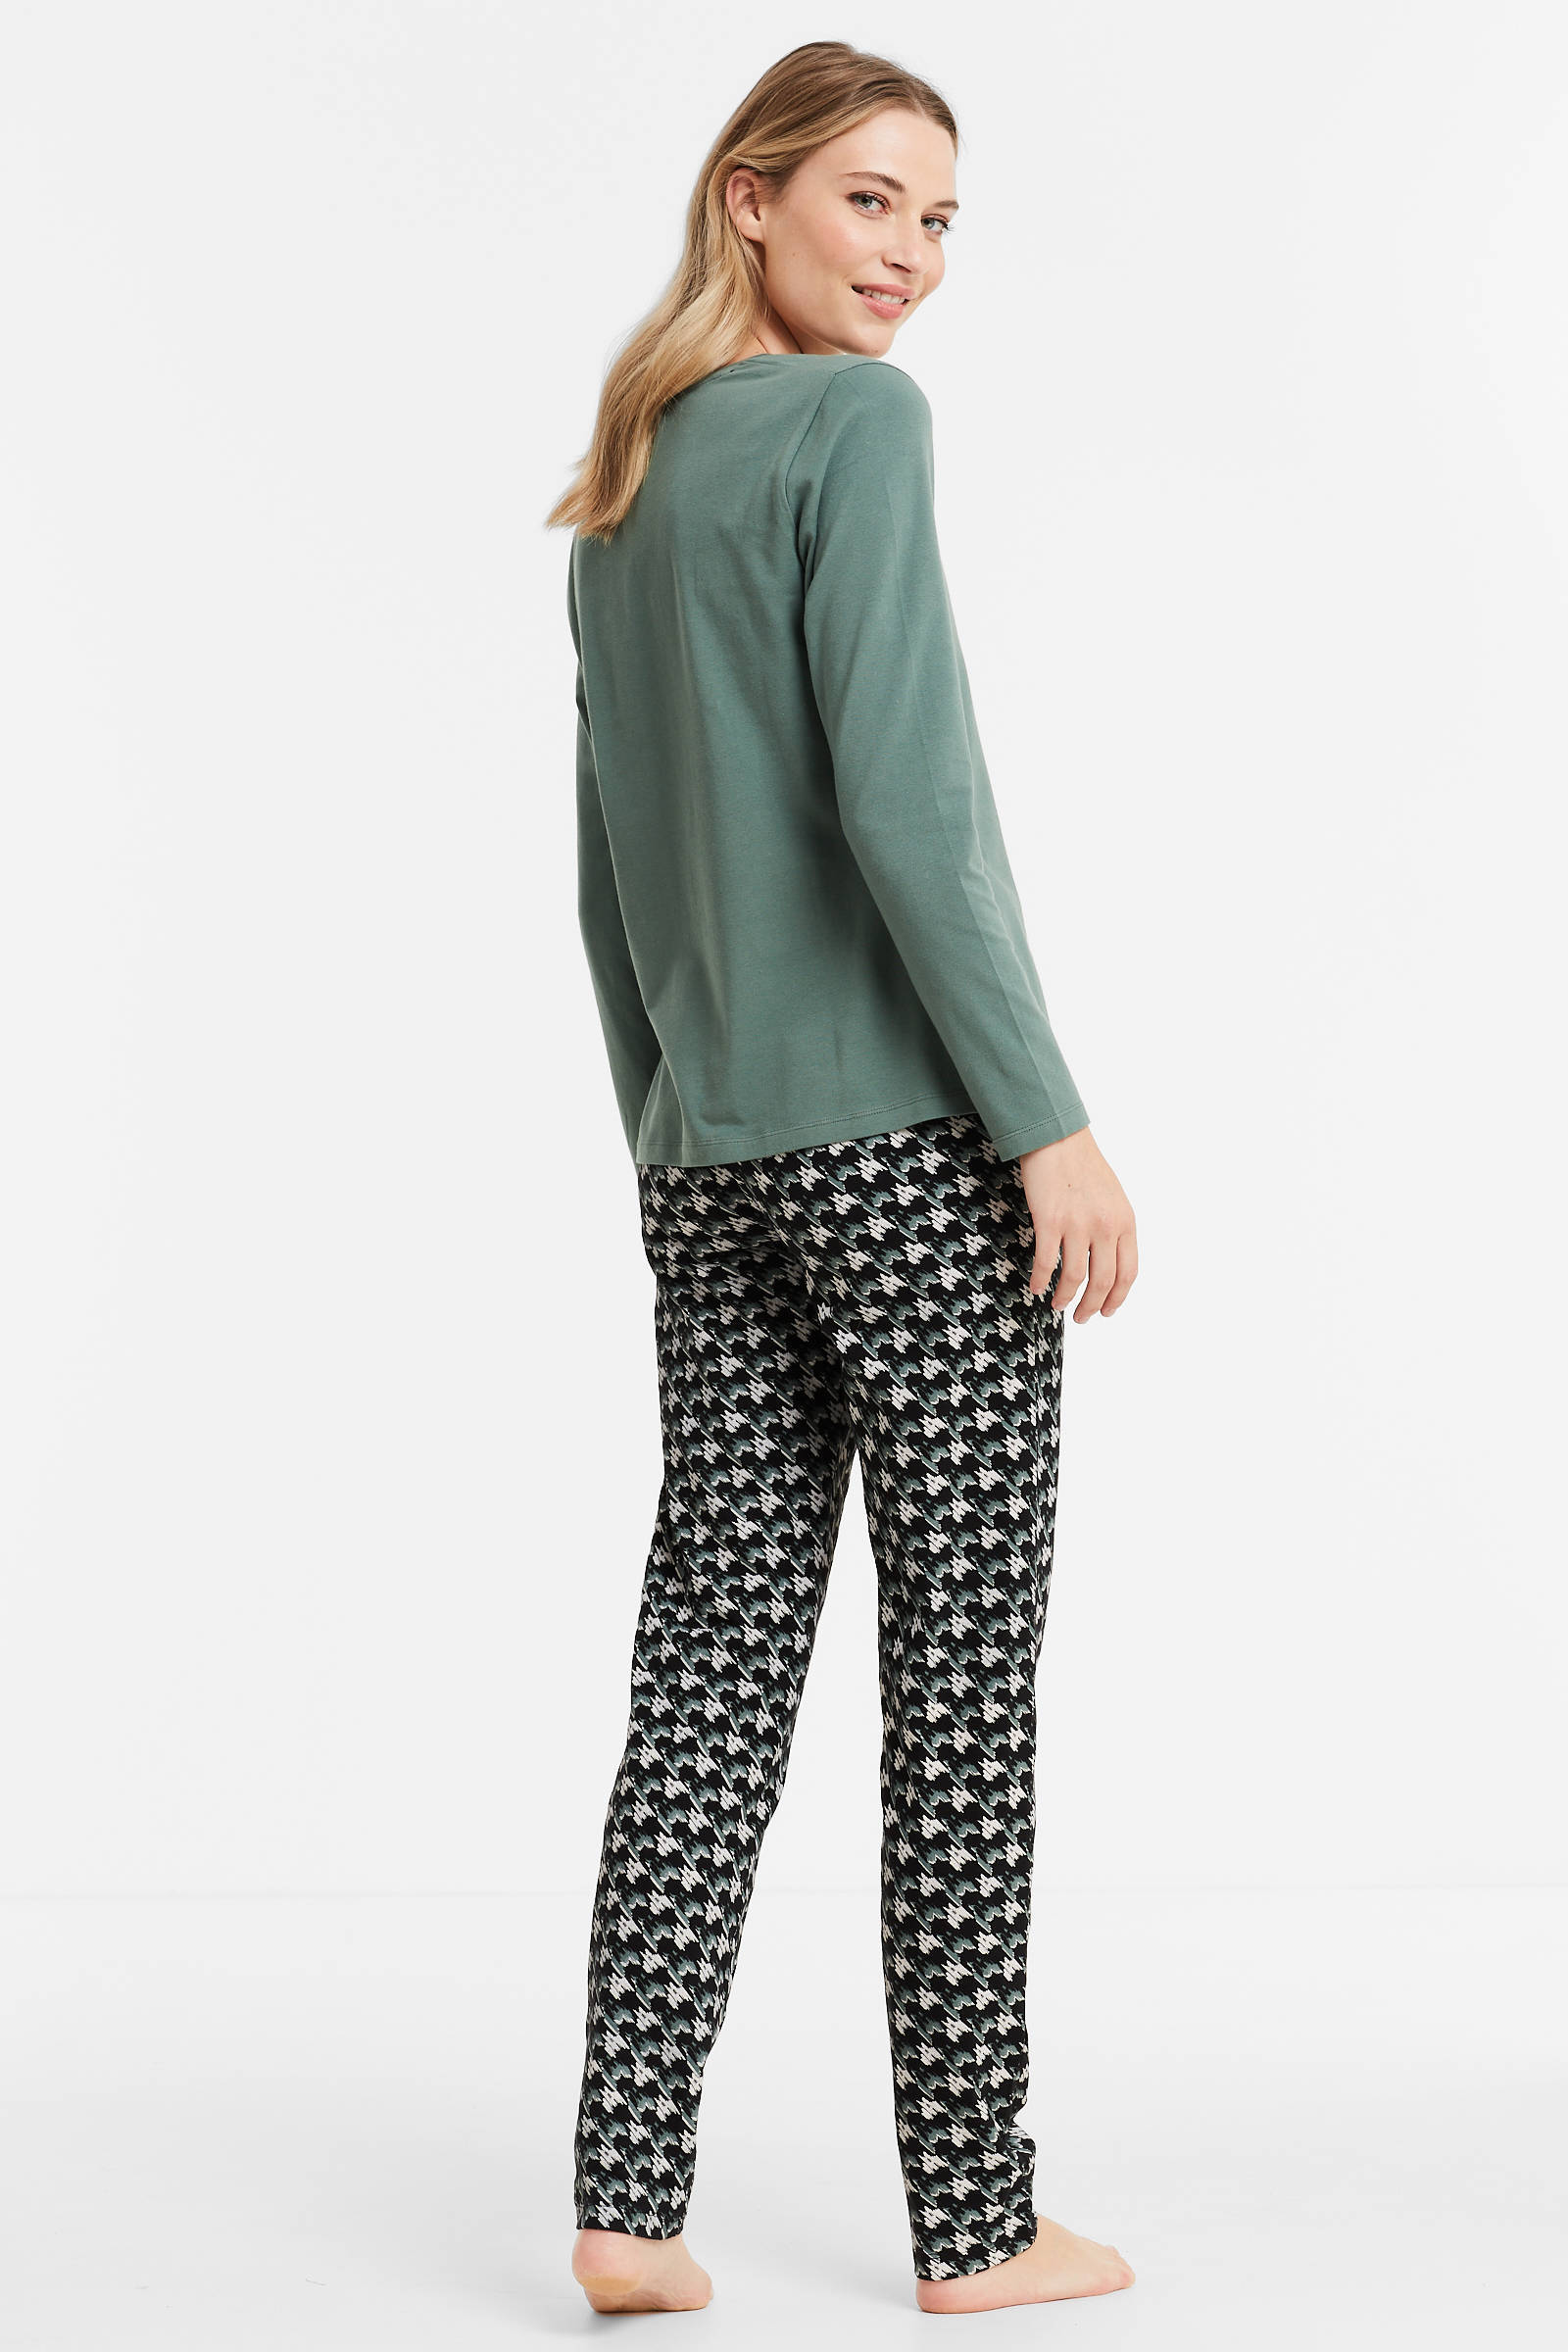 wehkamp Dames Kleding Nachtmode Pyjamas Pyjama groen/zwart 